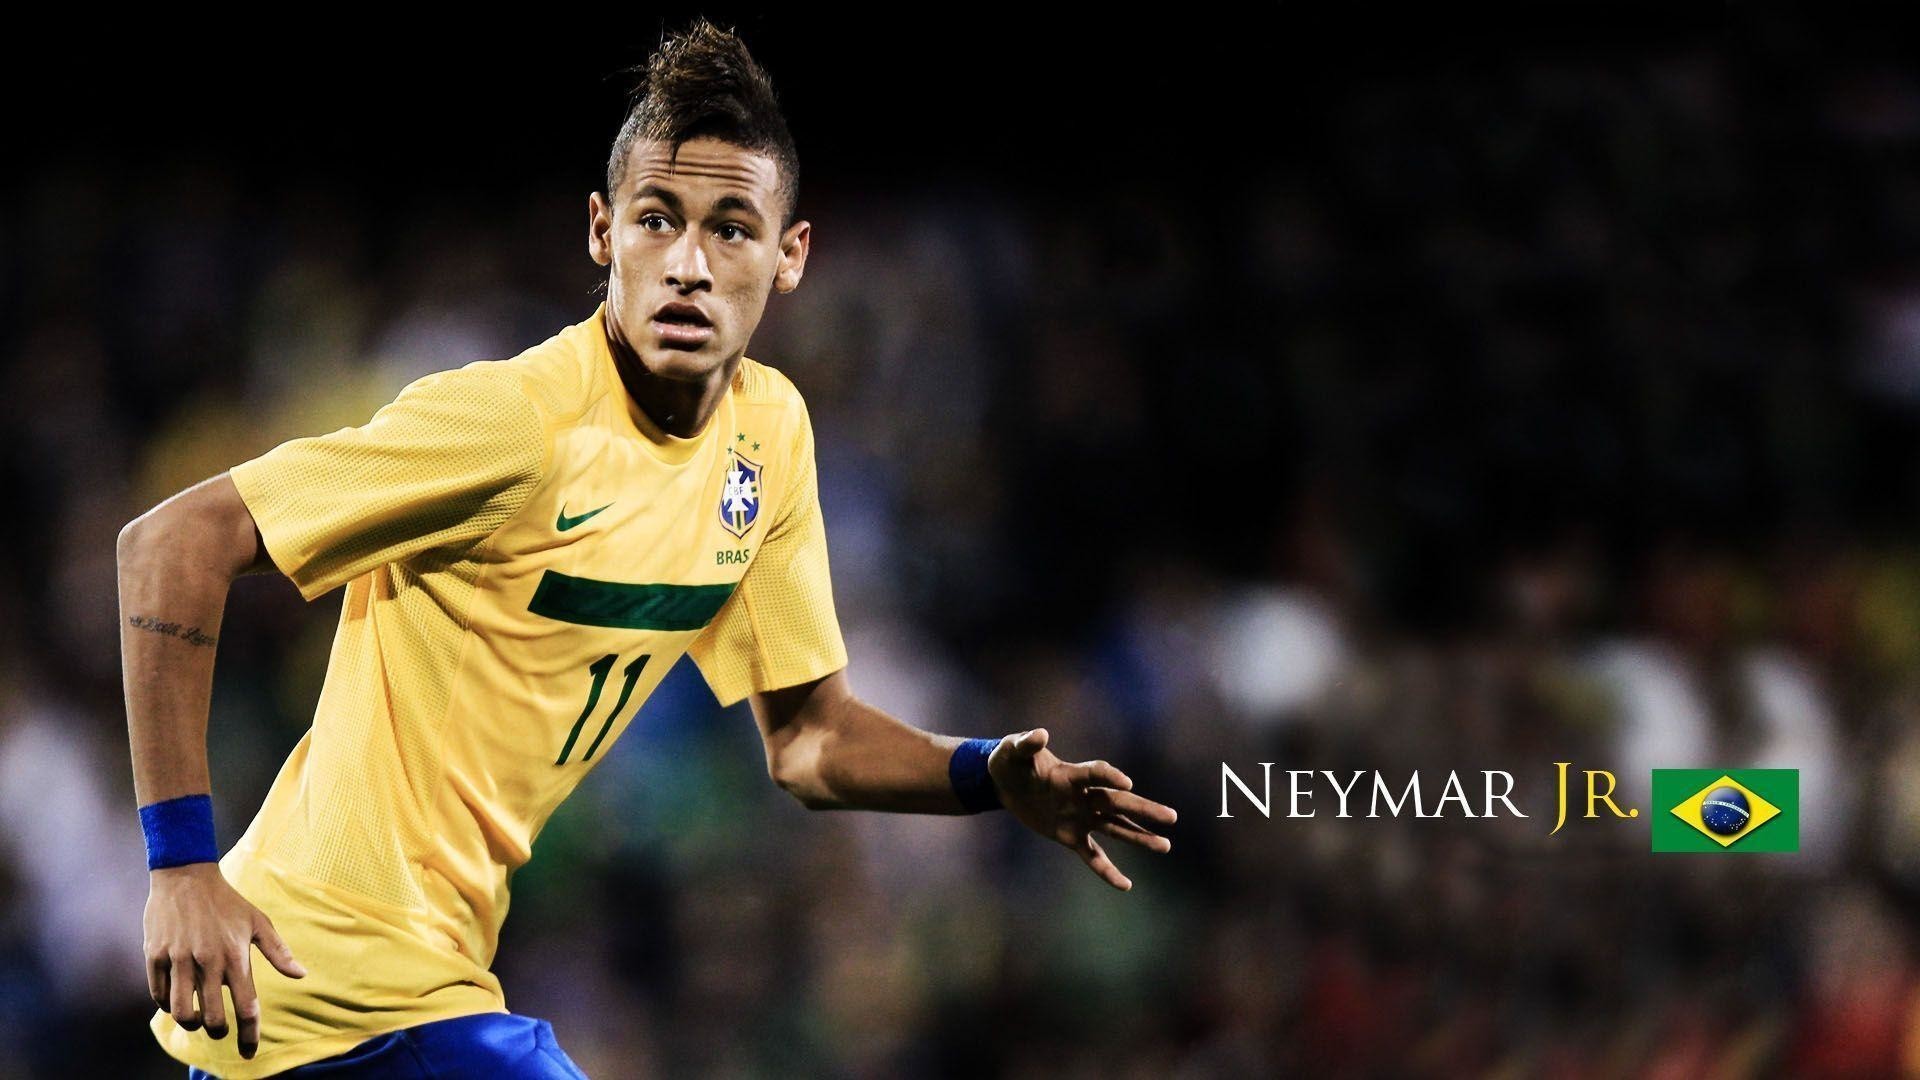 1920x1080  Neymar Brazil 2014 Scoring Wallpaper | Widescreen Wallpapers|  High .